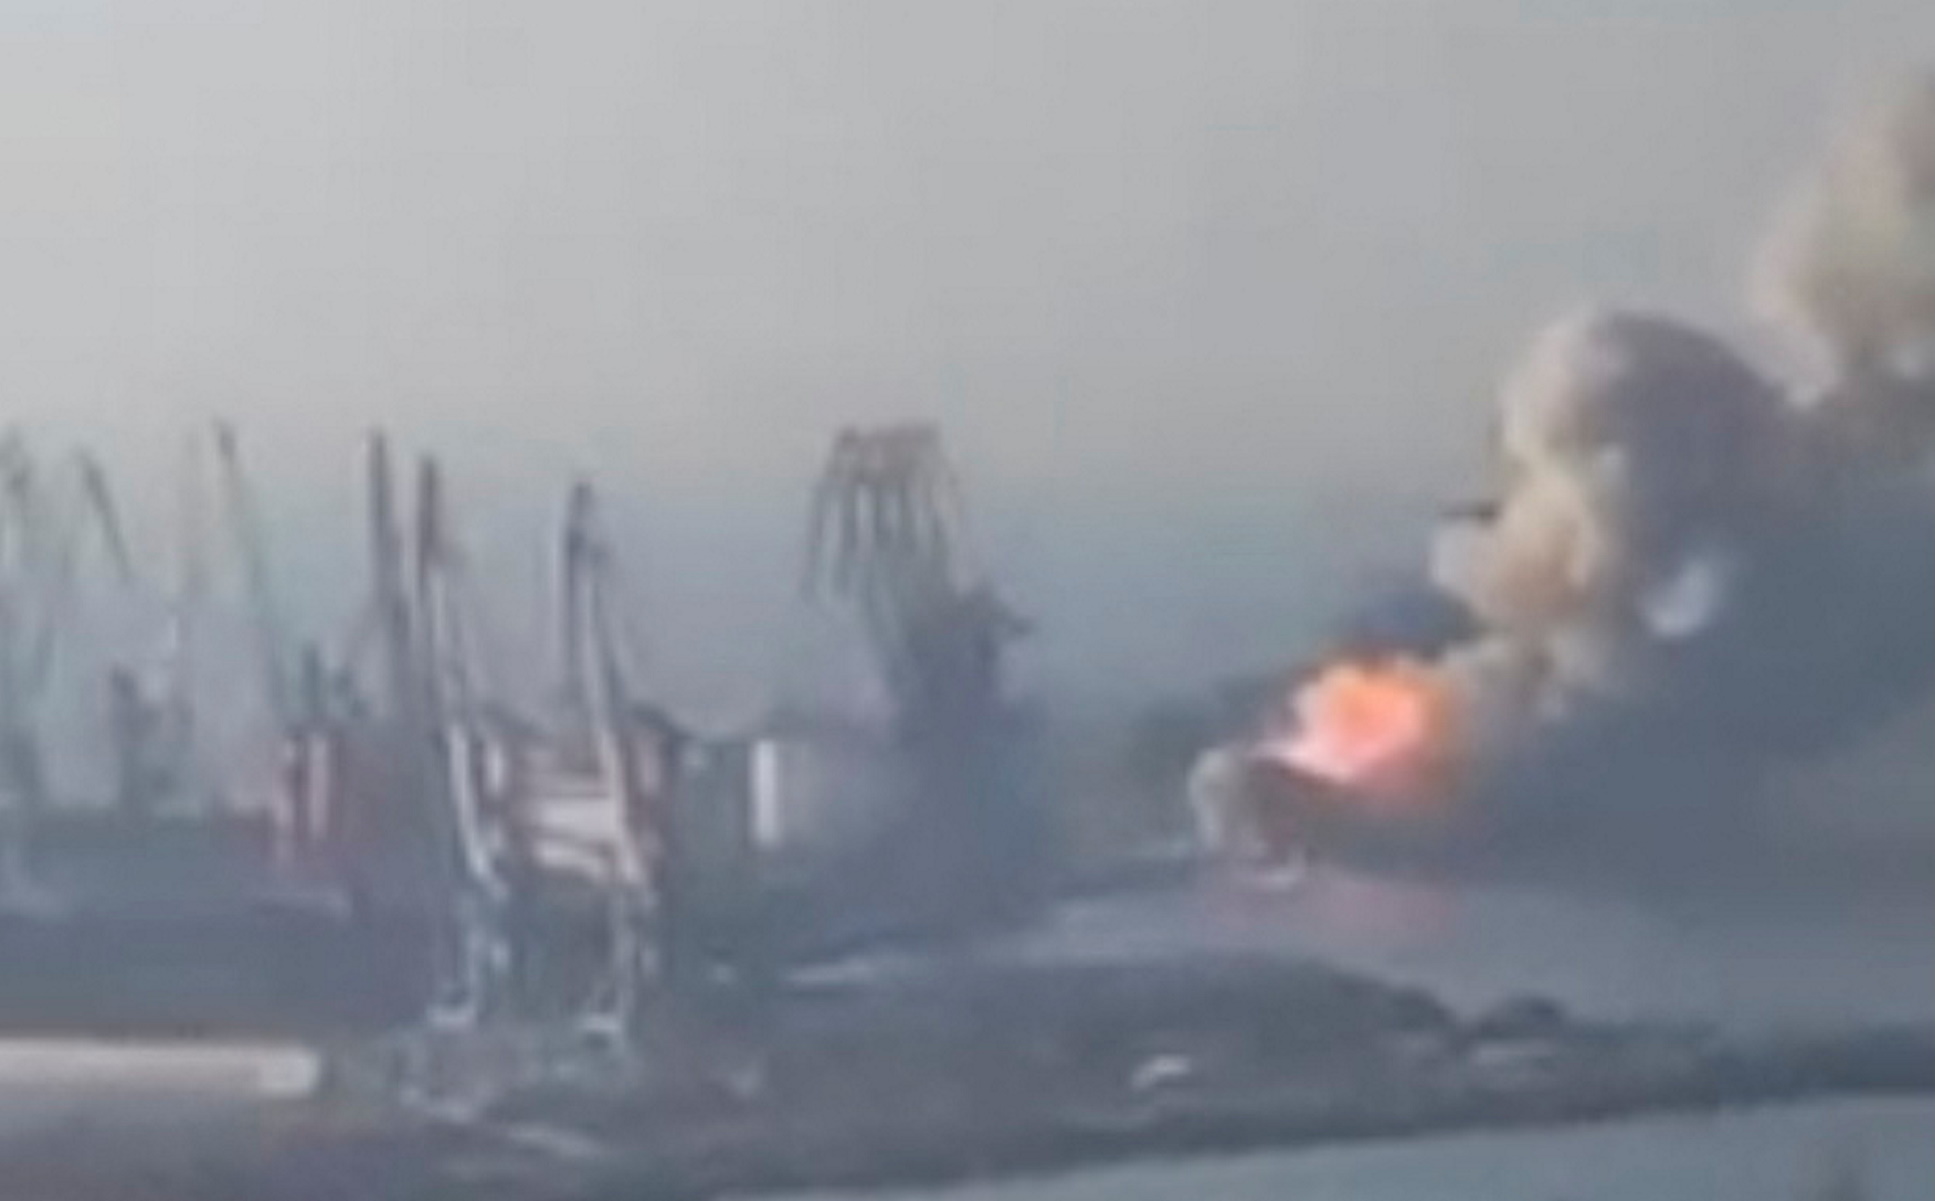 Πόλεμος στην Ουκρανία: Νέες εικόνες καταστροφής του πρώτου ρωσικού αποβατικού πλοίου στο Μπερντιάνσκ